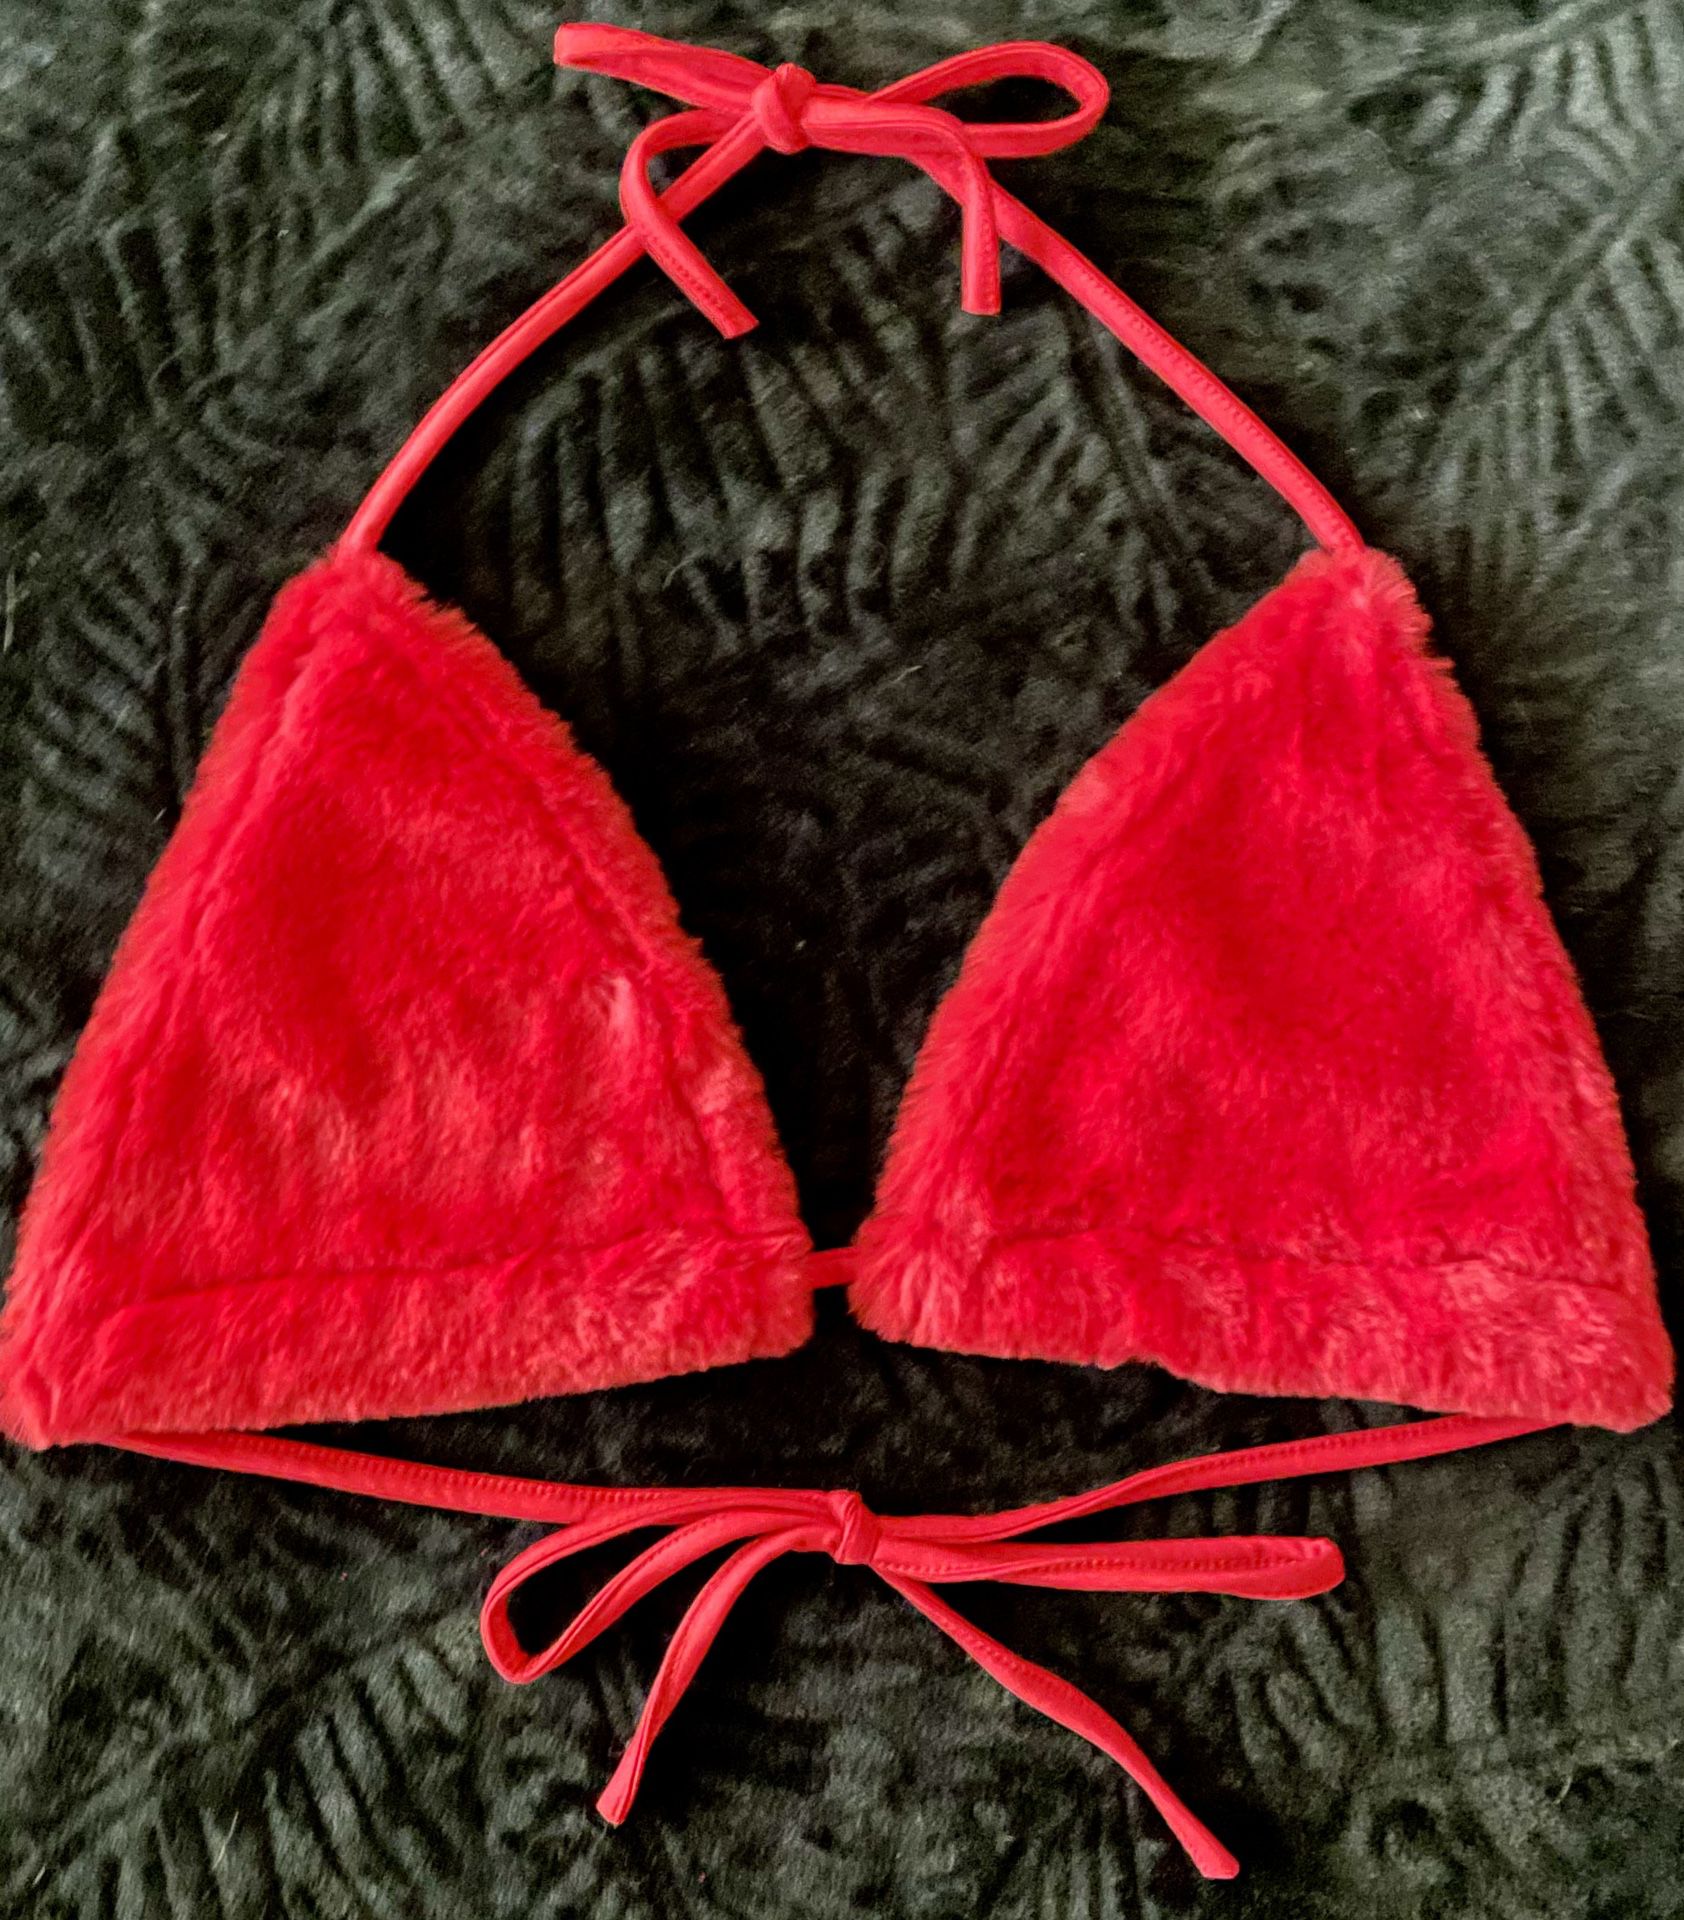 Red Fuzzy Bikini Top